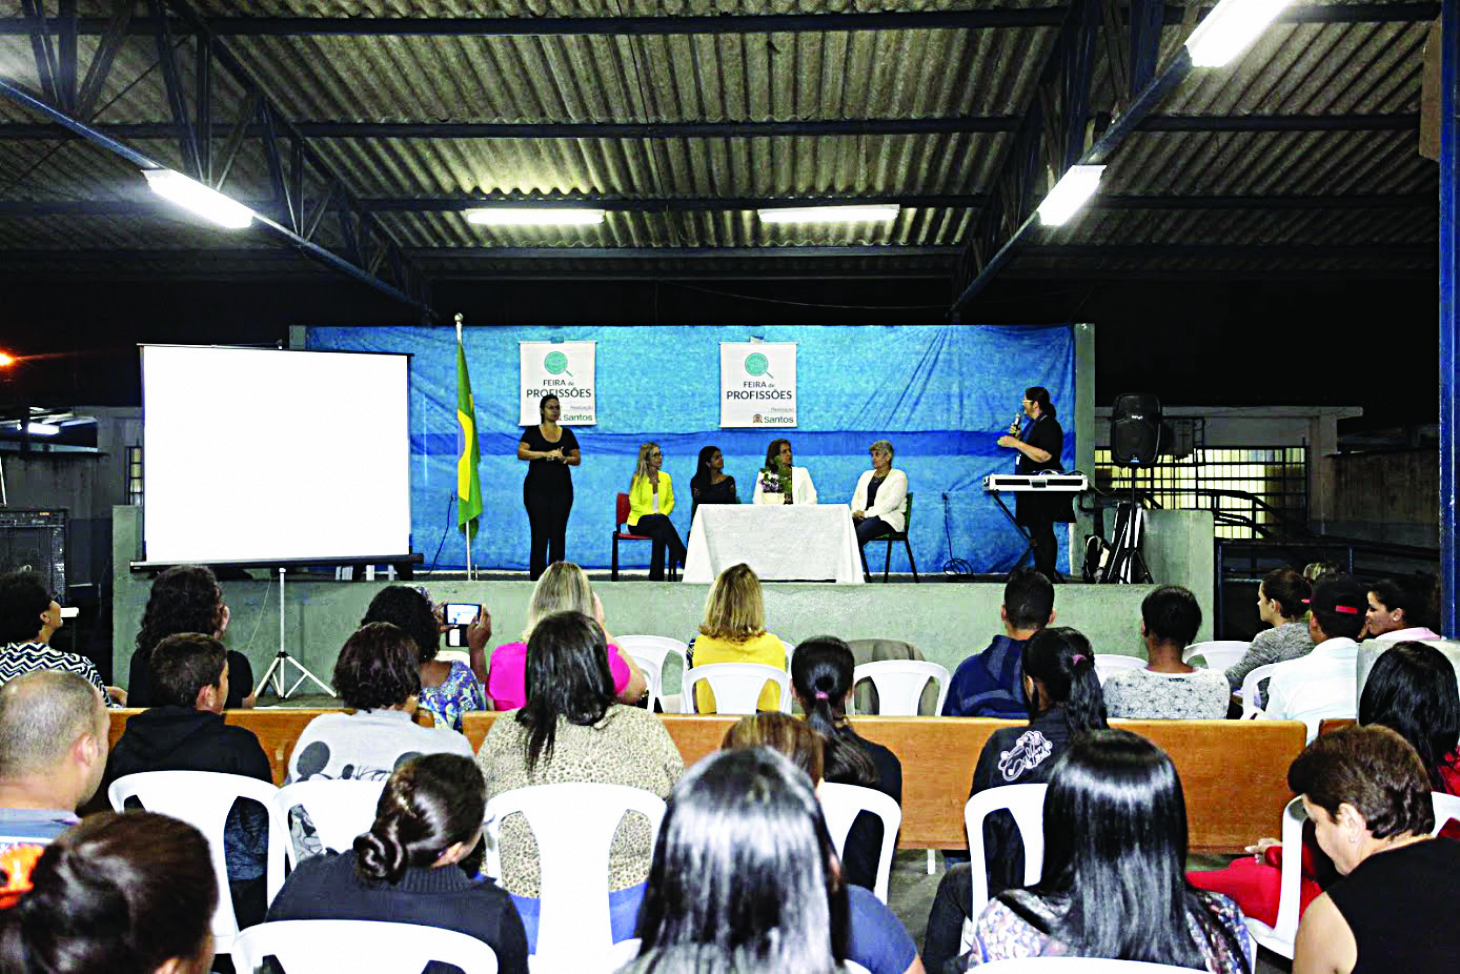 Feira de profissões mostra oportunidades de carreiras e cursos na região | Jornal da Orla